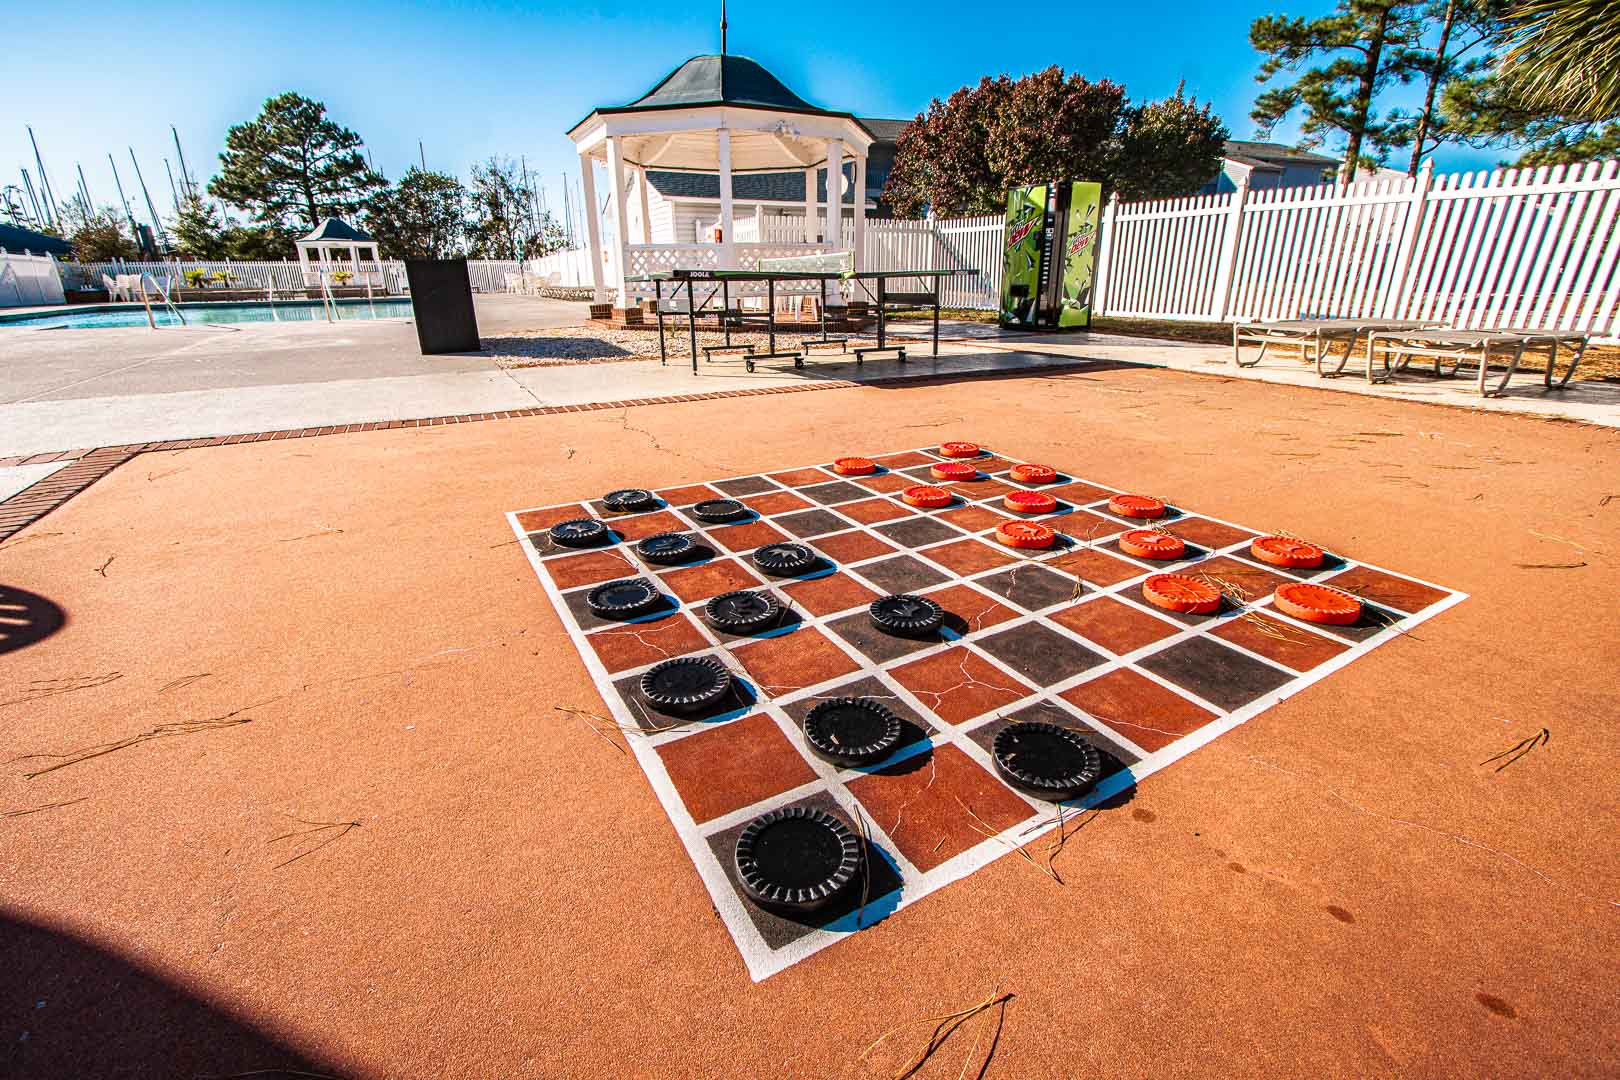 Jumbo outdoor checker board  at VRI's Sandcastle Village in New Bern, North Carolina.